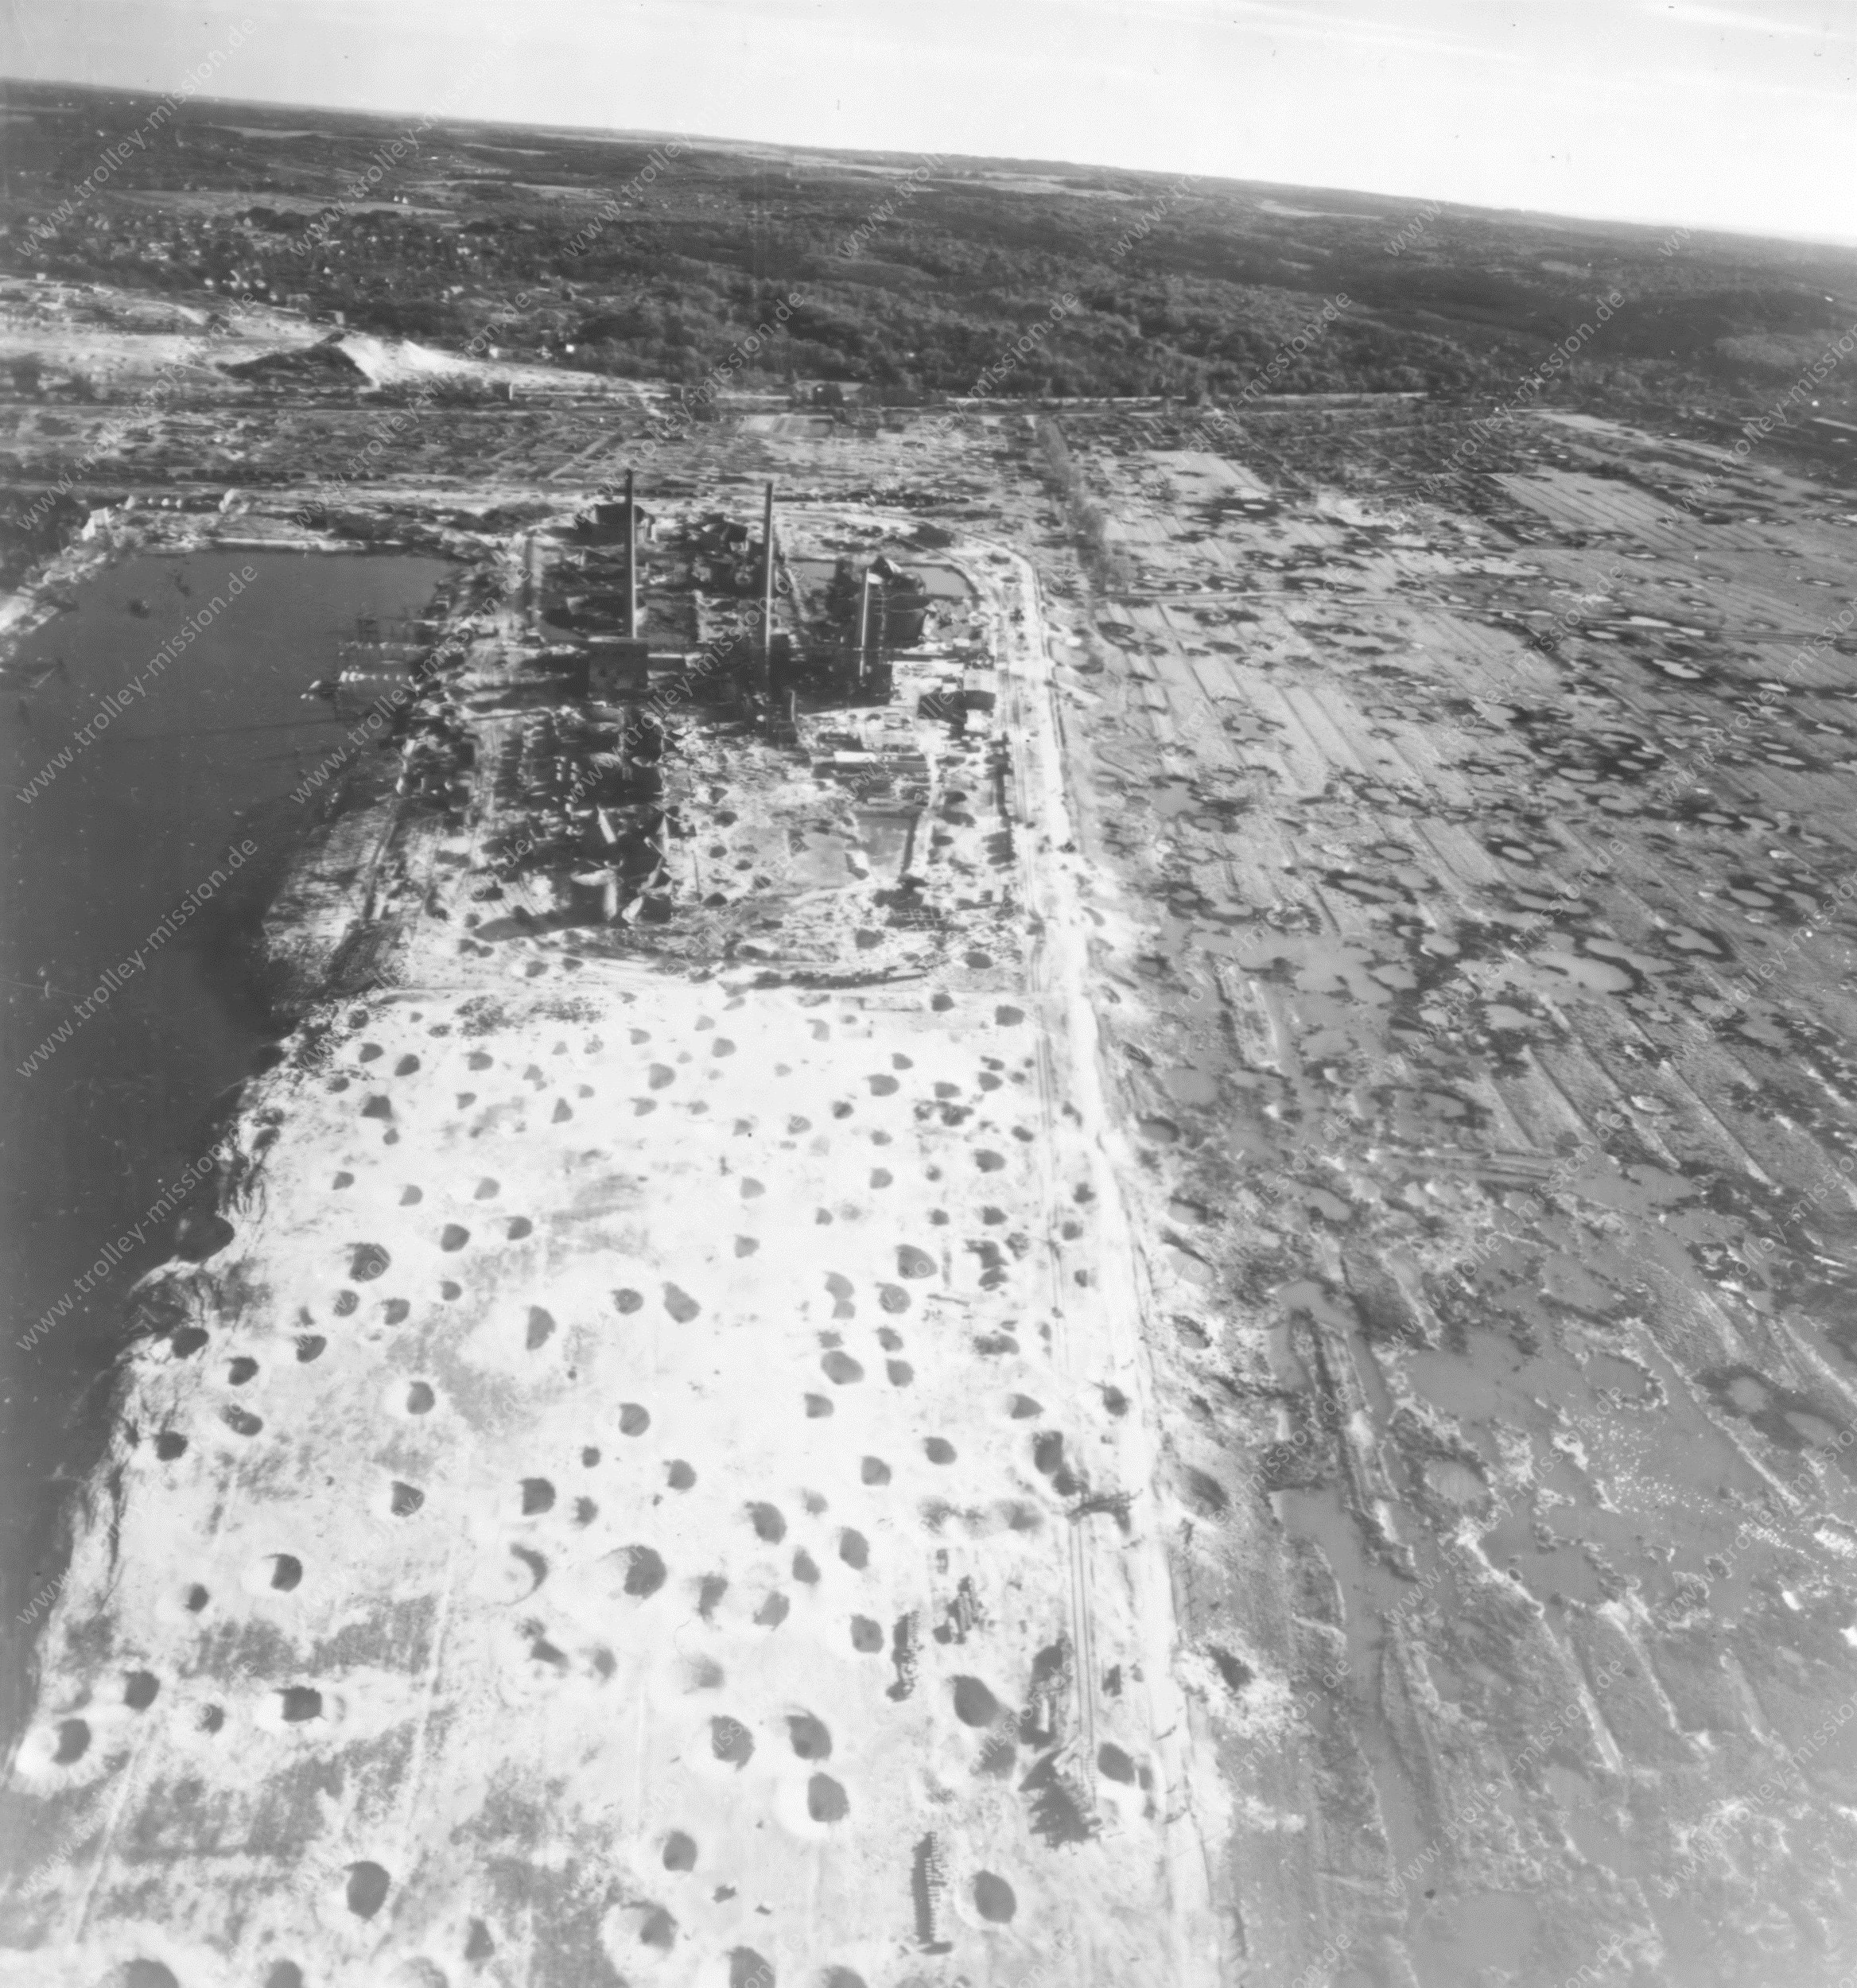 Luftaufnahme Ebano Asphalt-Werke AG im Petroleum-Hafen von Harburg nach den Fliegerbomben-Angriffen im Zweiten Weltkrieg